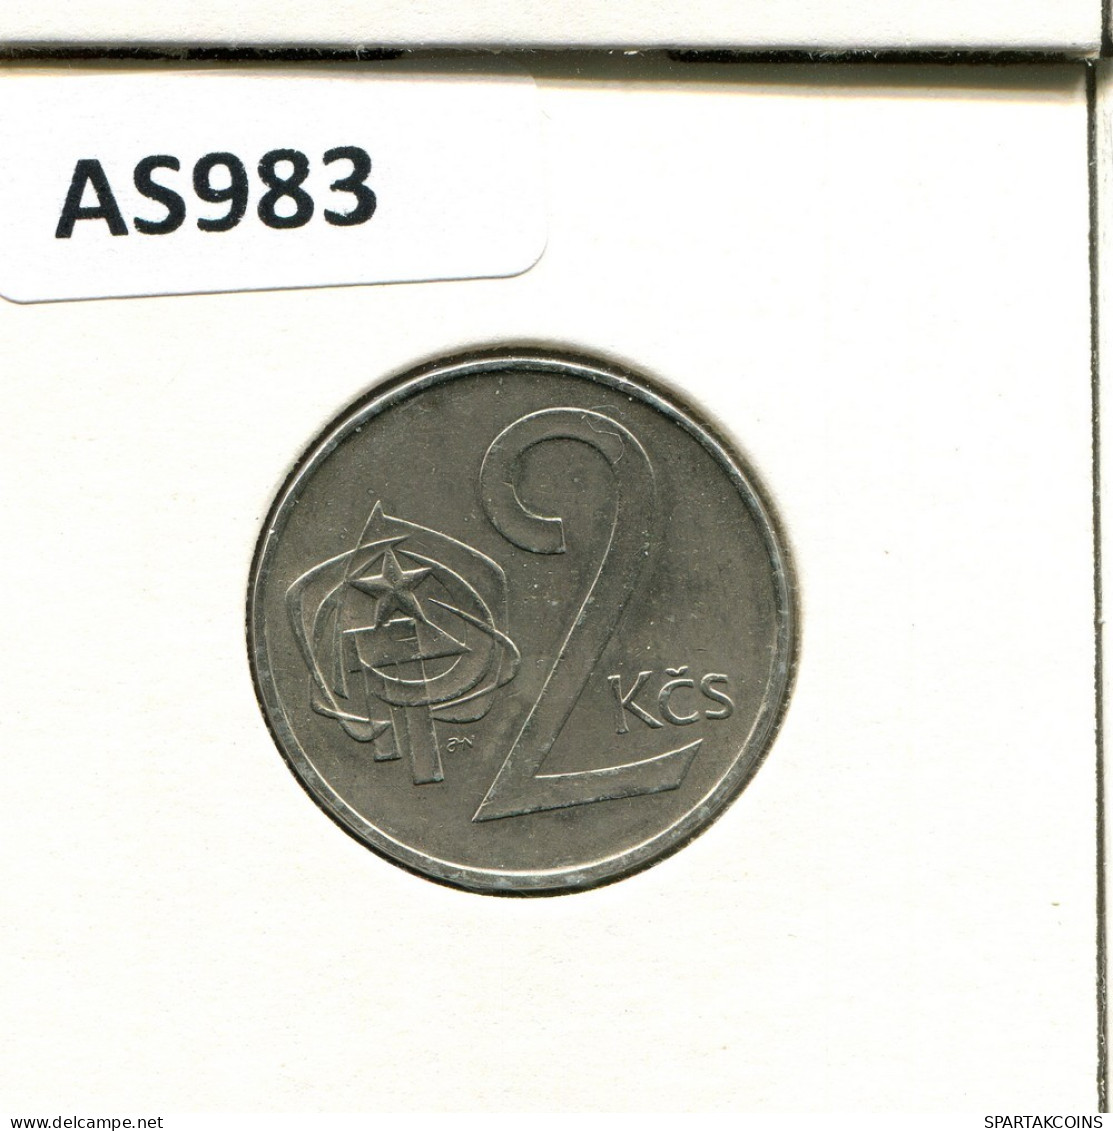 2 KORUN 1989 TSCHECHOSLOWAKEI CZECHOSLOWAKEI SLOVAKIA Münze #AS983.D.A - Tschechoslowakei